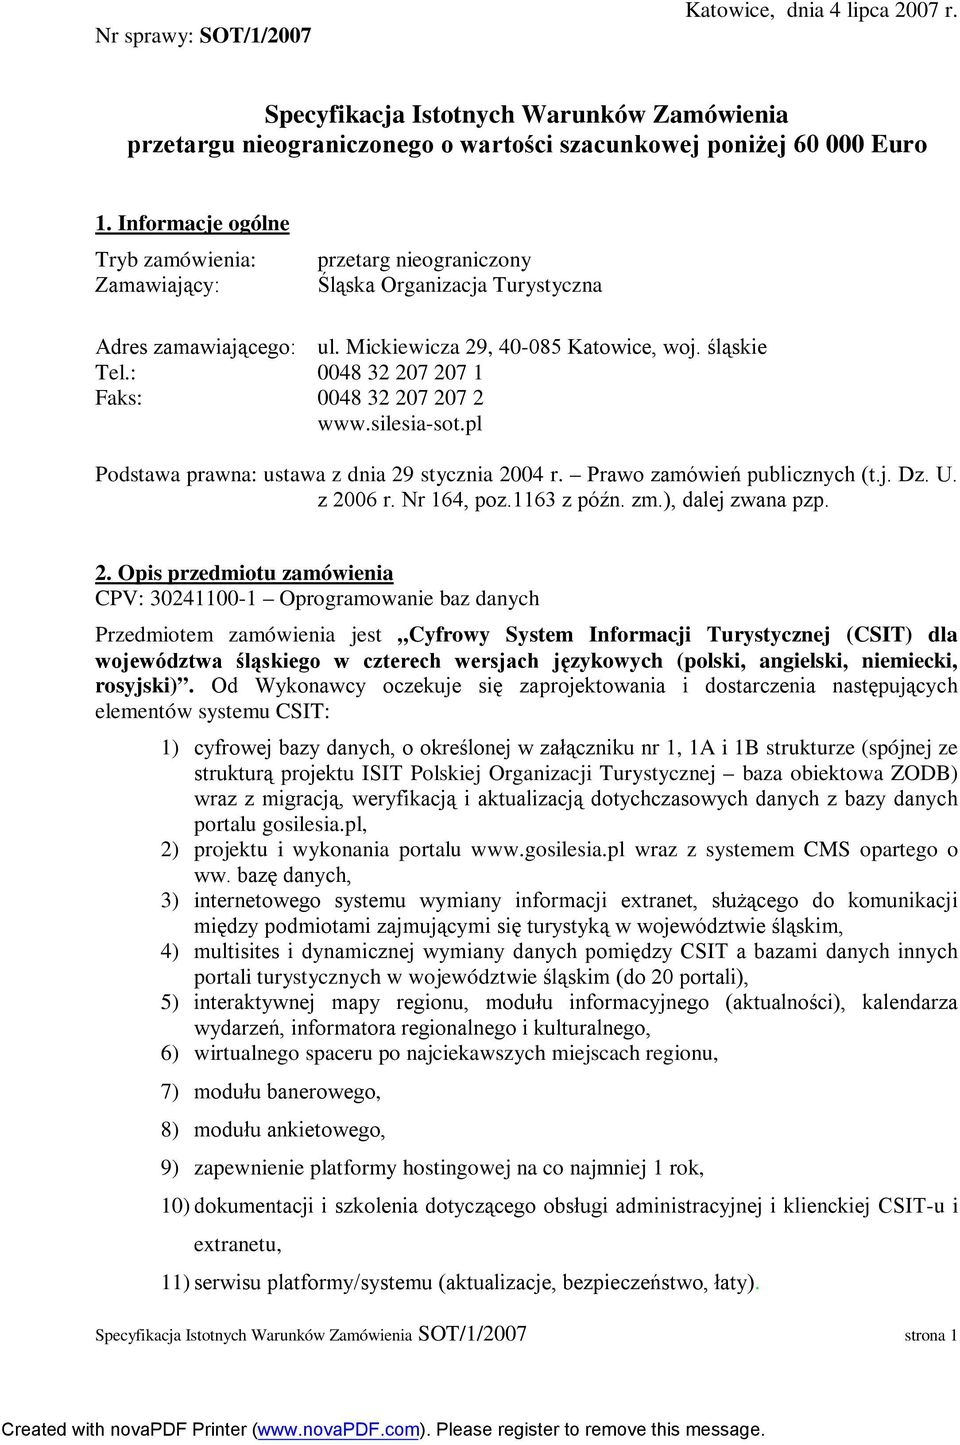 : 0048 32 207 207 1 Faks: 0048 32 207 207 2 www.silesia-sot.pl Podstawa prawna: ustawa z dnia 29 stycznia 2004 r. Prawo zamówień publicznych (t.j. Dz. U. z 2006 r. Nr 164, poz.1163 z późn. zm.